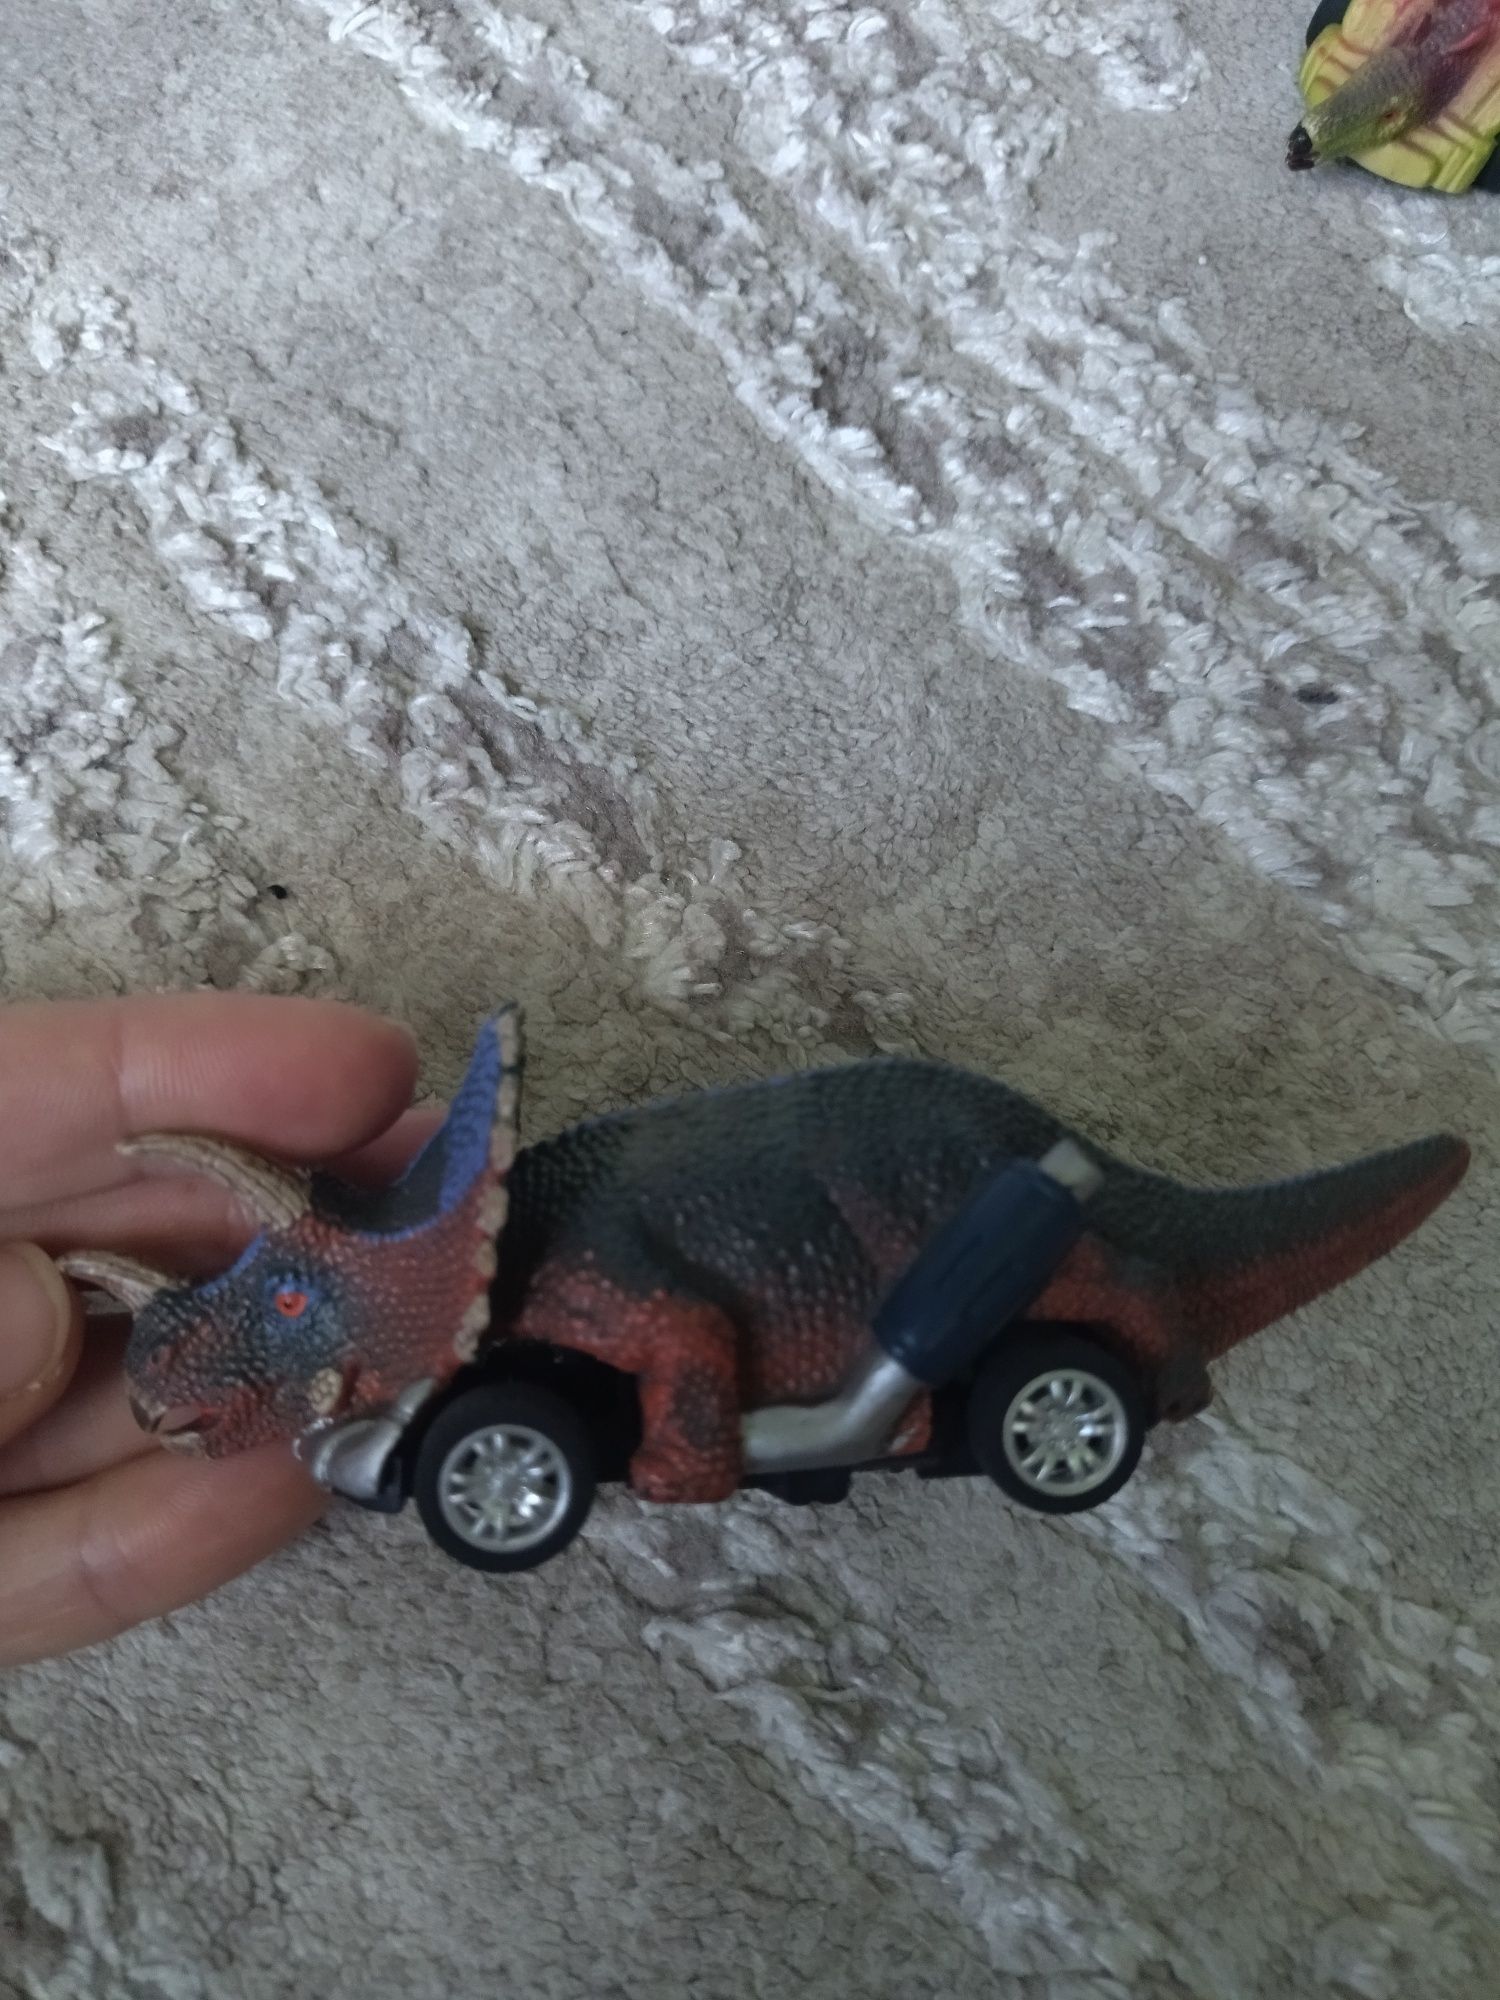 Машинки динозаври, dinobros